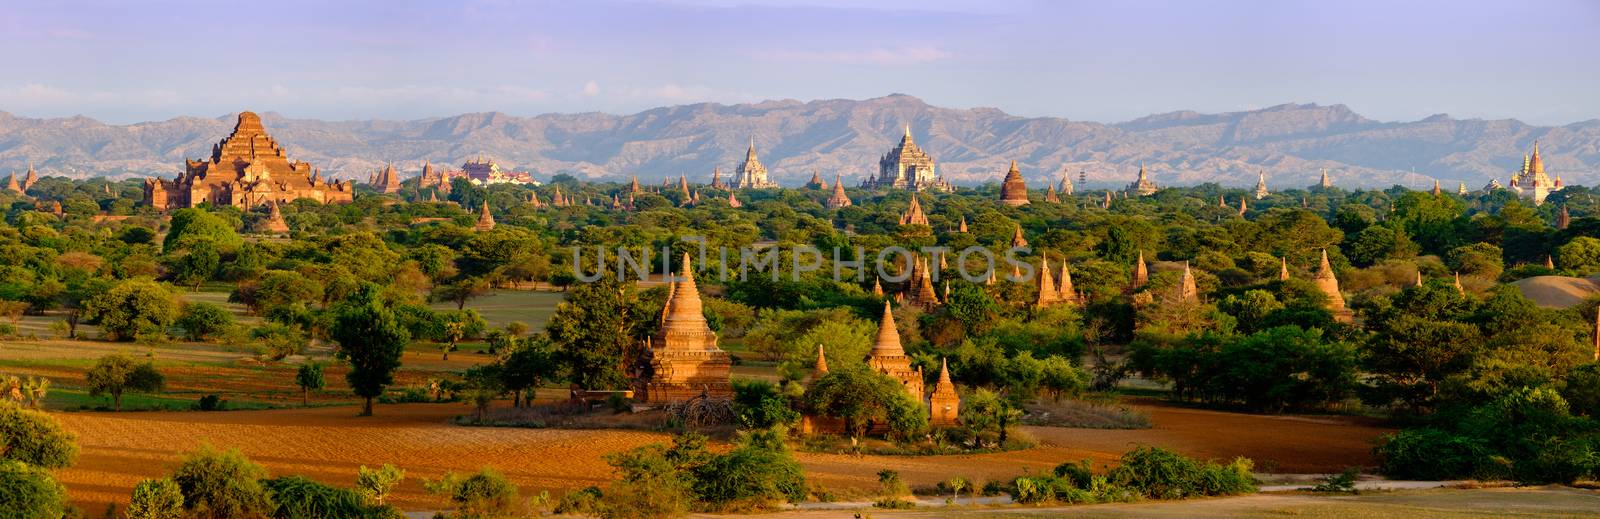 Panoramic landscape view of old temples in Bagan, Myanmar (Burma)